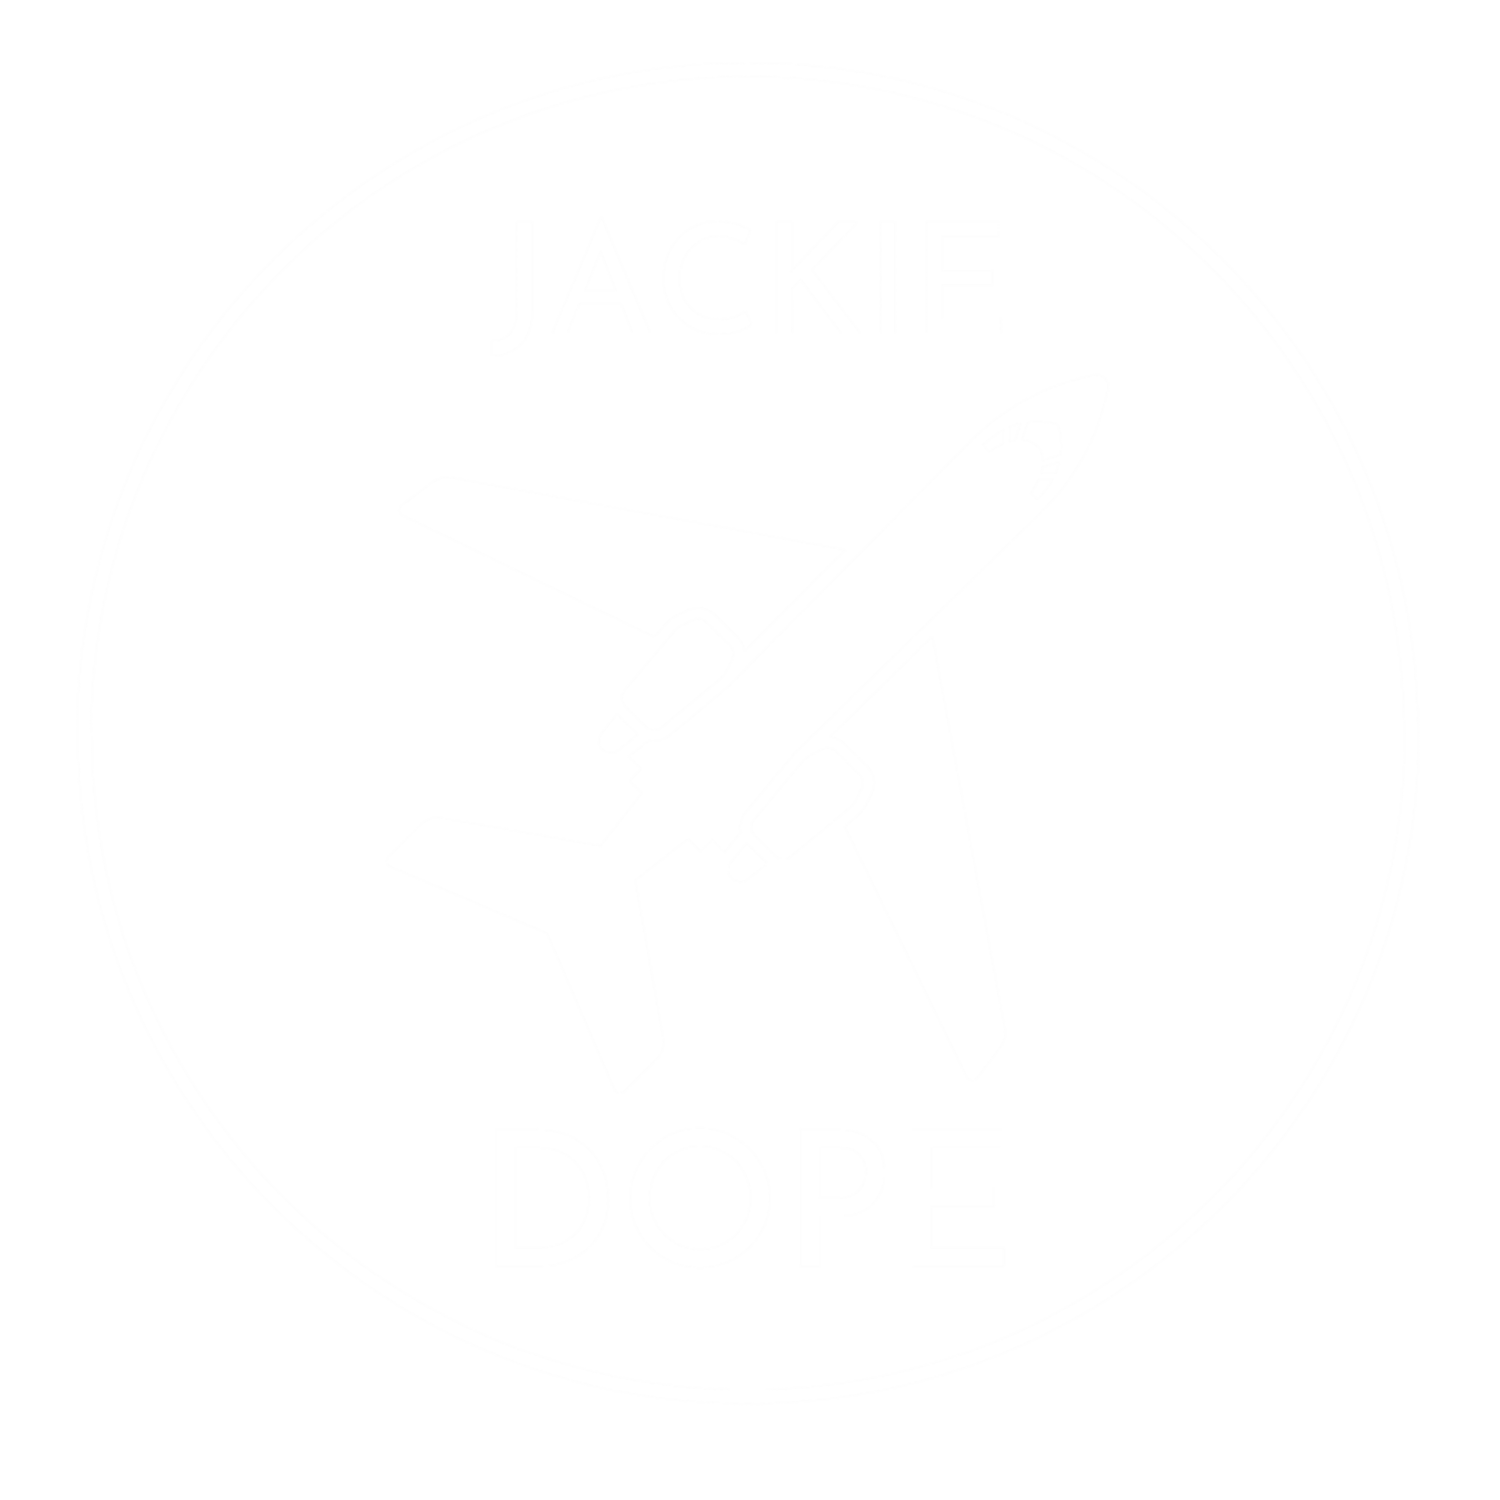 JACKIE DOPE